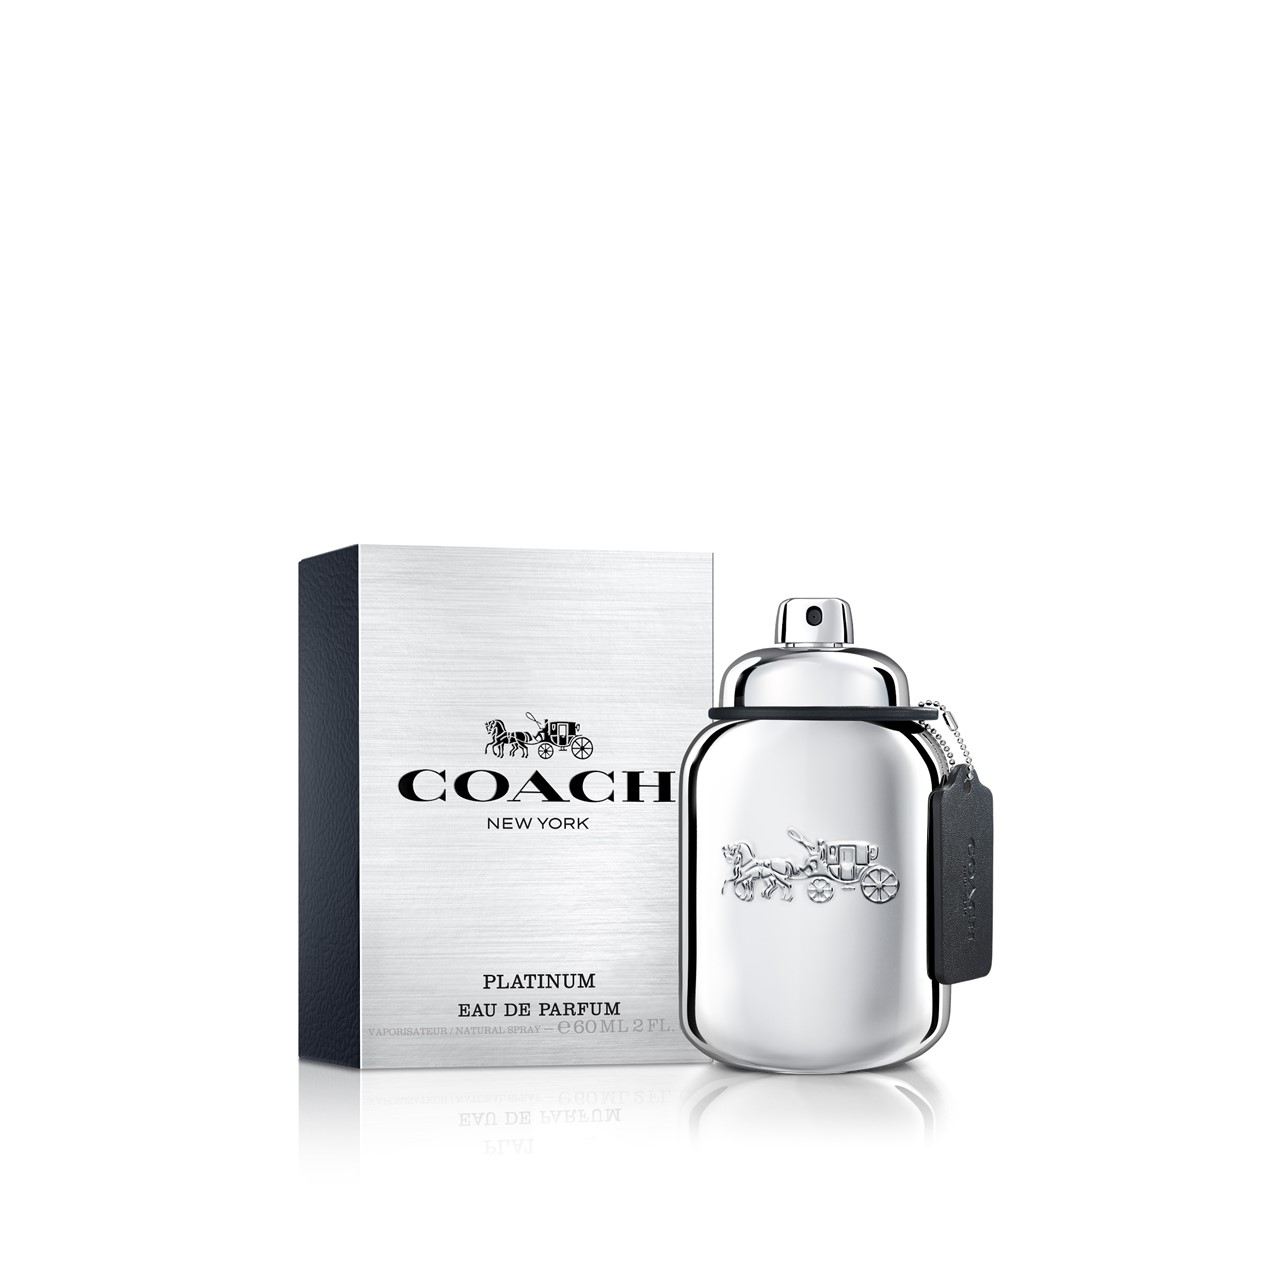 Coach Platinum Eau de Parfum For Men 60ml